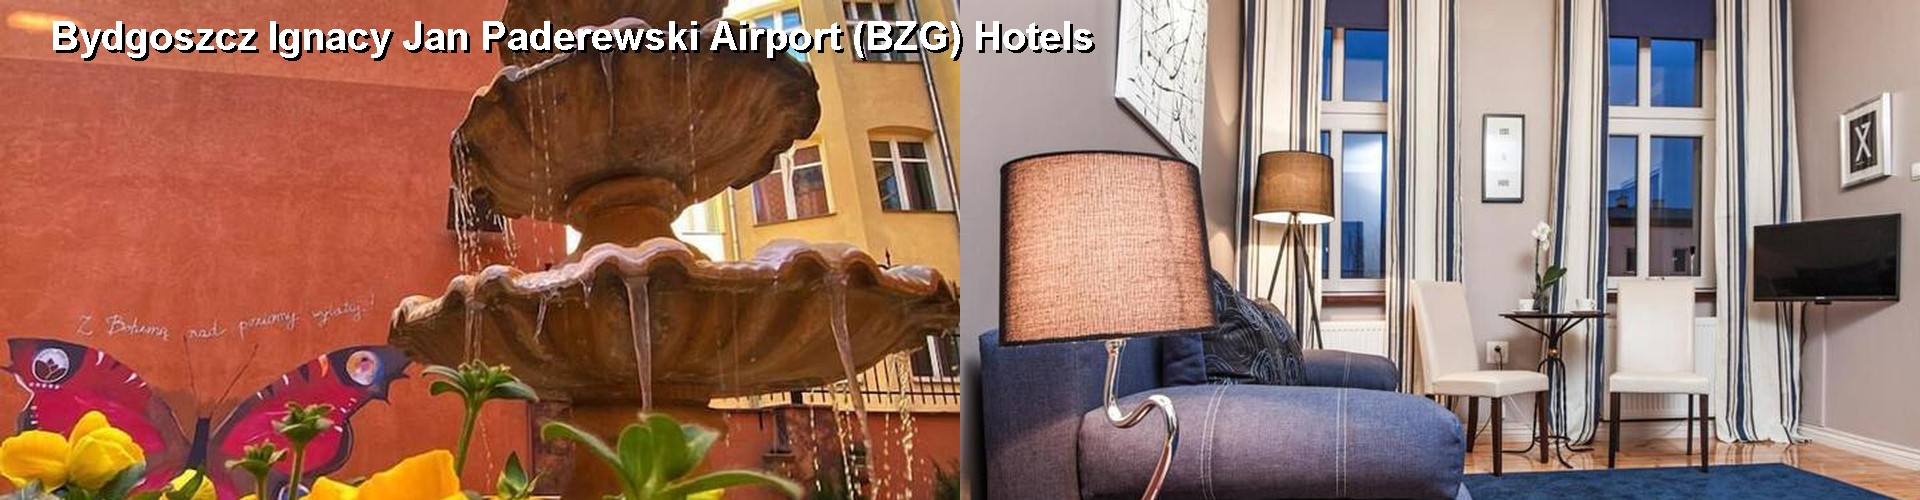 5 Best Hotels near Bydgoszcz Ignacy Jan Paderewski Airport (BZG)